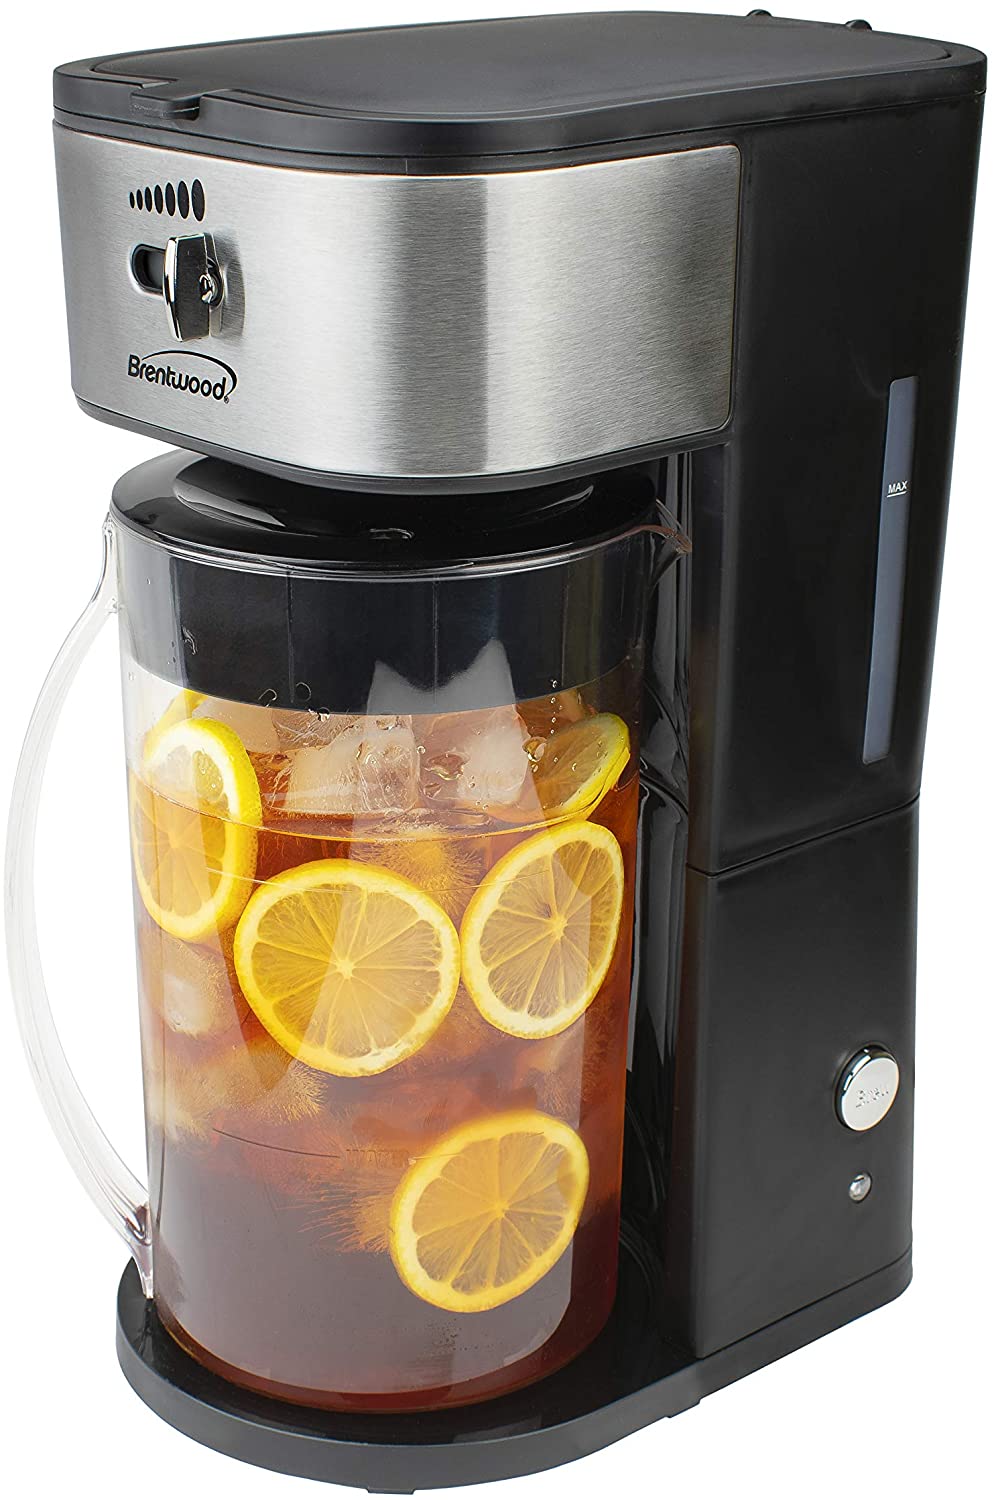 https://www.dontwasteyourmoney.com/wp-content/uploads/2021/08/brentwood-kt-2150bk-customizable-iced-tea-maker-2-quart-iced-tea-maker.jpg